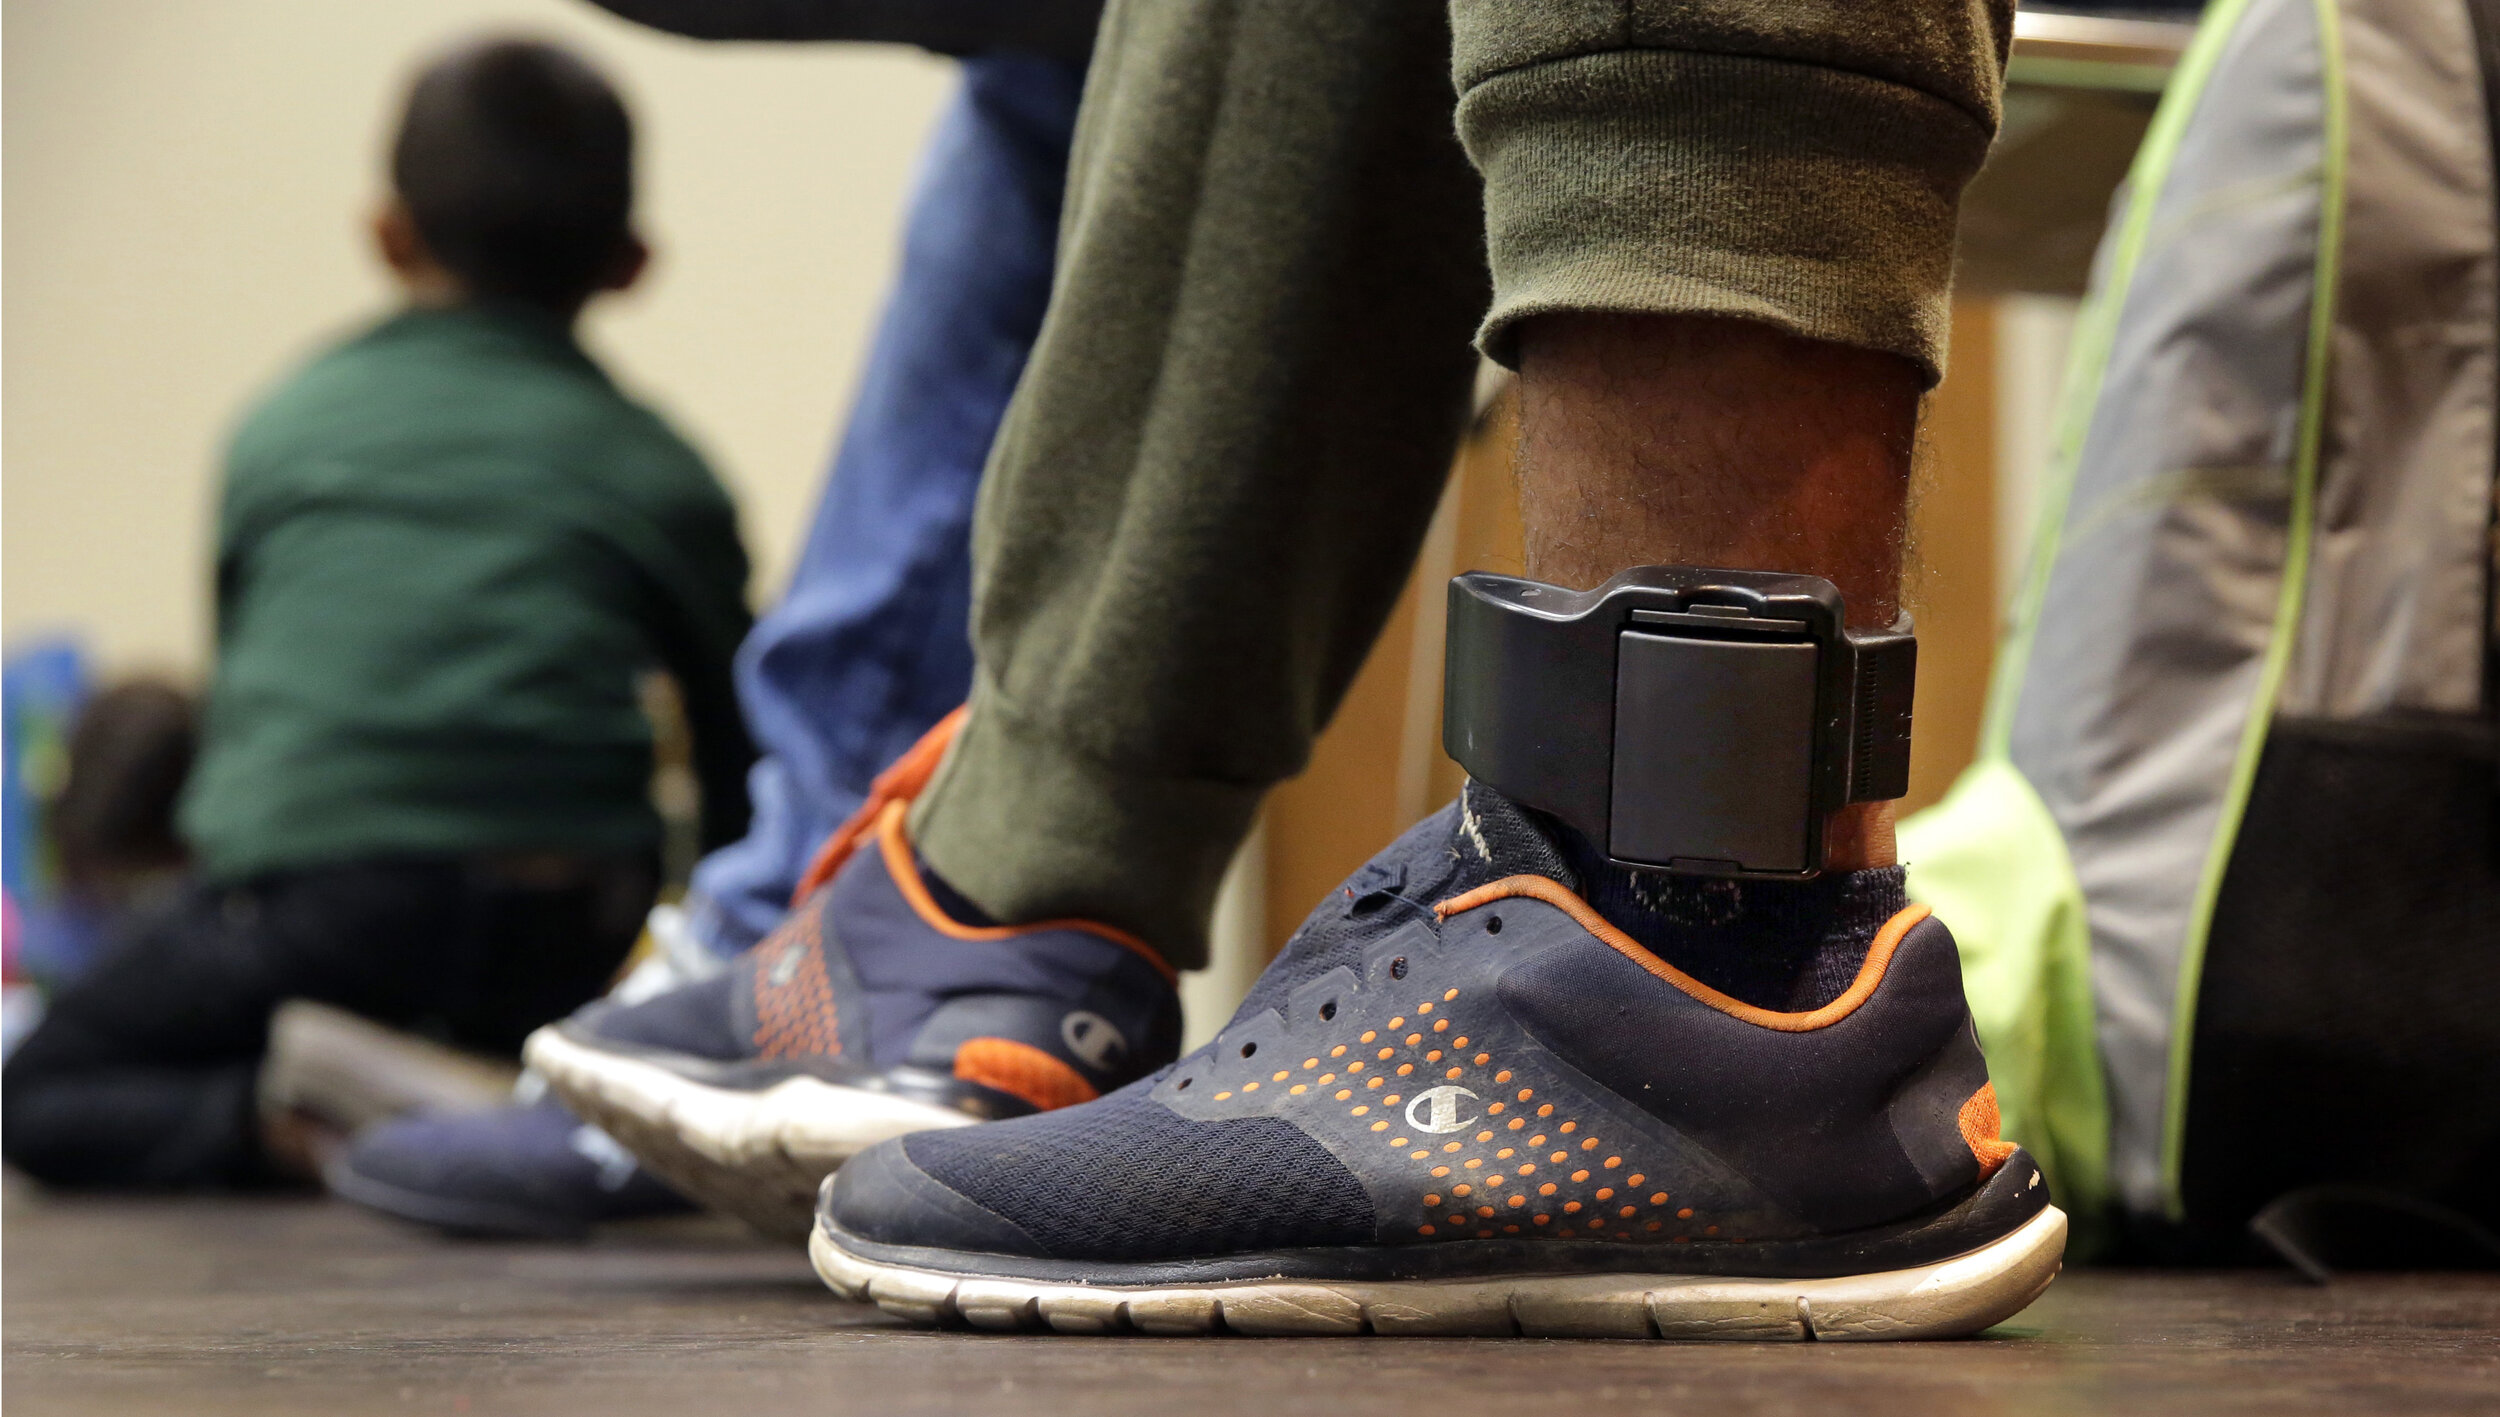 Should Nebraska step up its use of electronic ankle bracelets